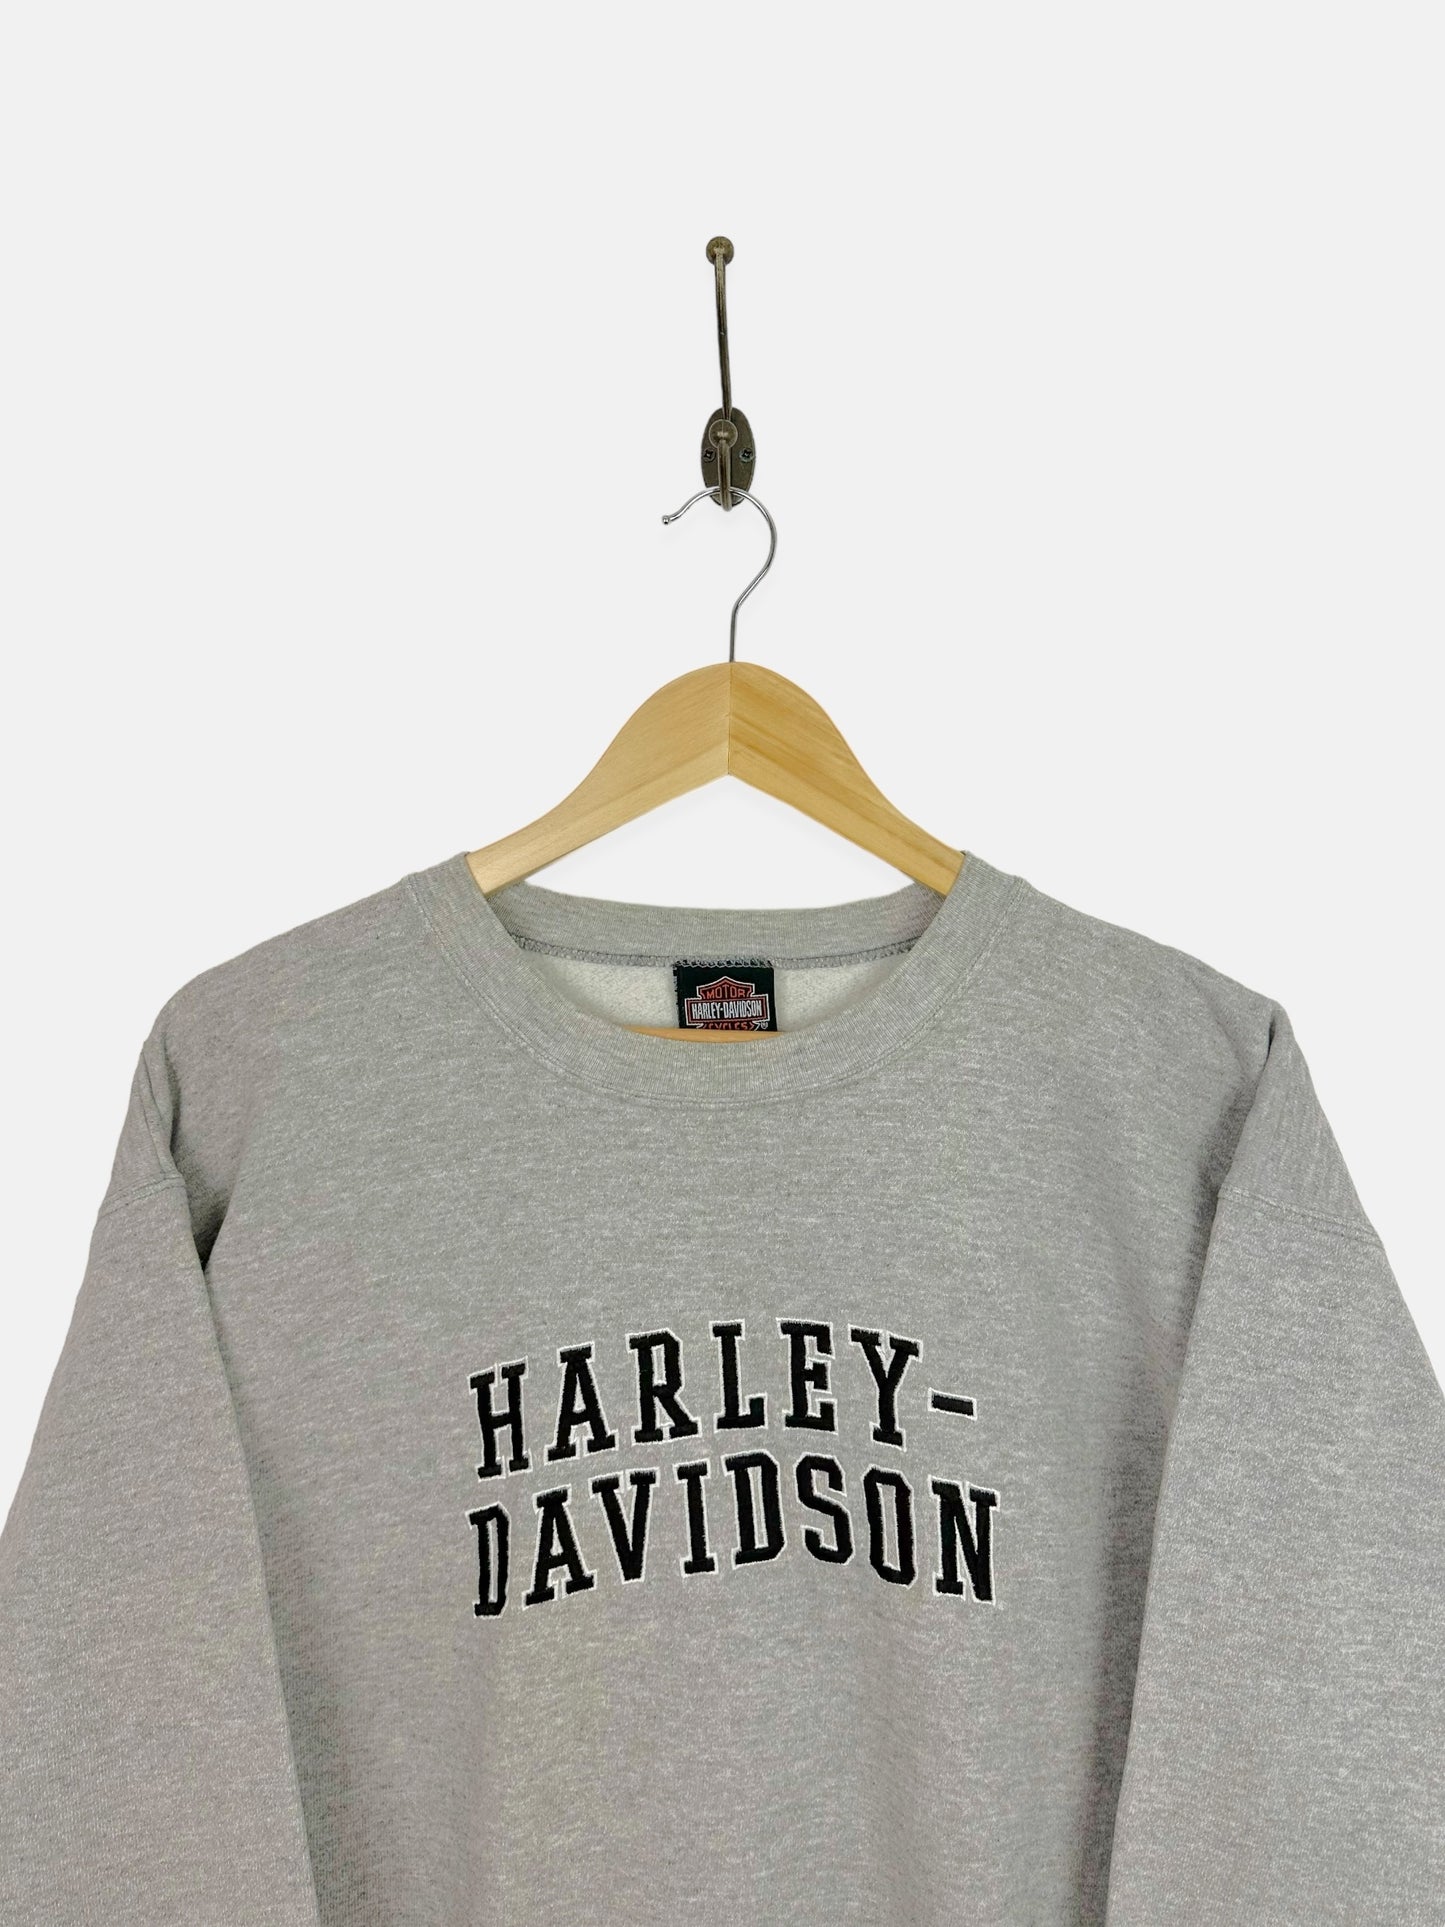 90's Harley Davidson Grand Junction Embroidered Vintage Sweatshirt Size 10